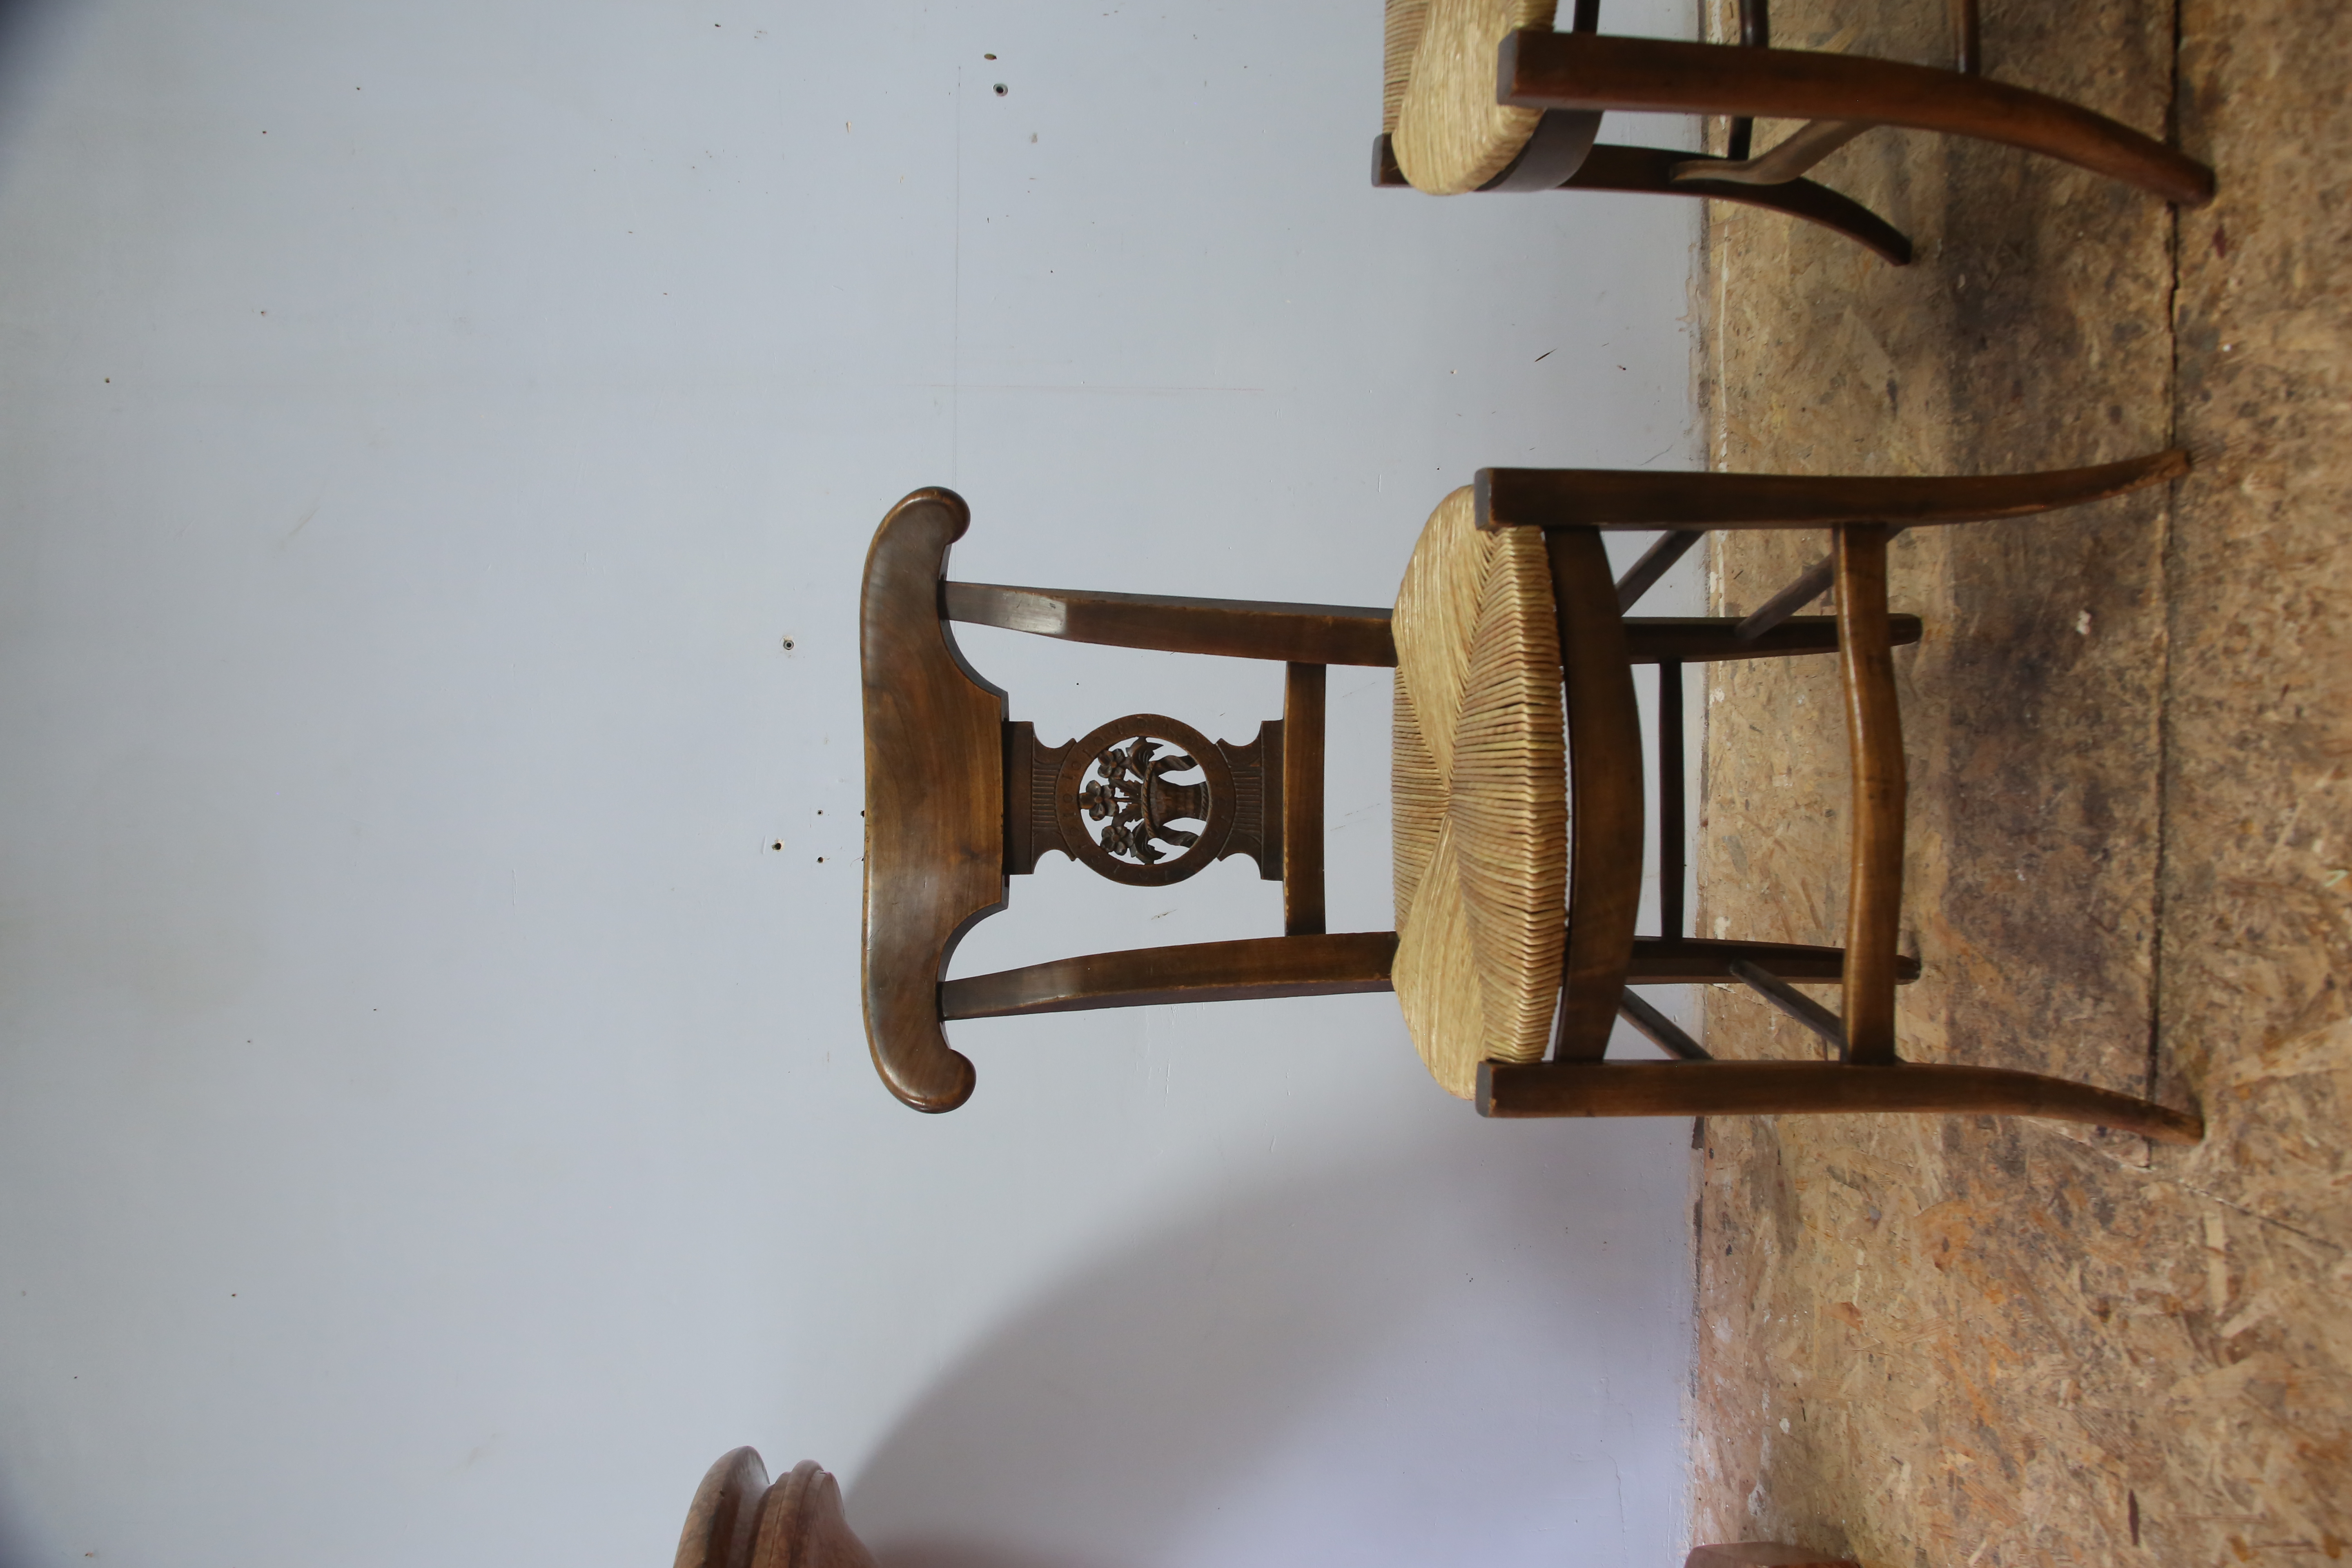 Restauration complète de cette paire de chaises. Révision des assemblages, allègement de la finition, collage à la colle de poisson et fabrication de paille traditionnelle patinée